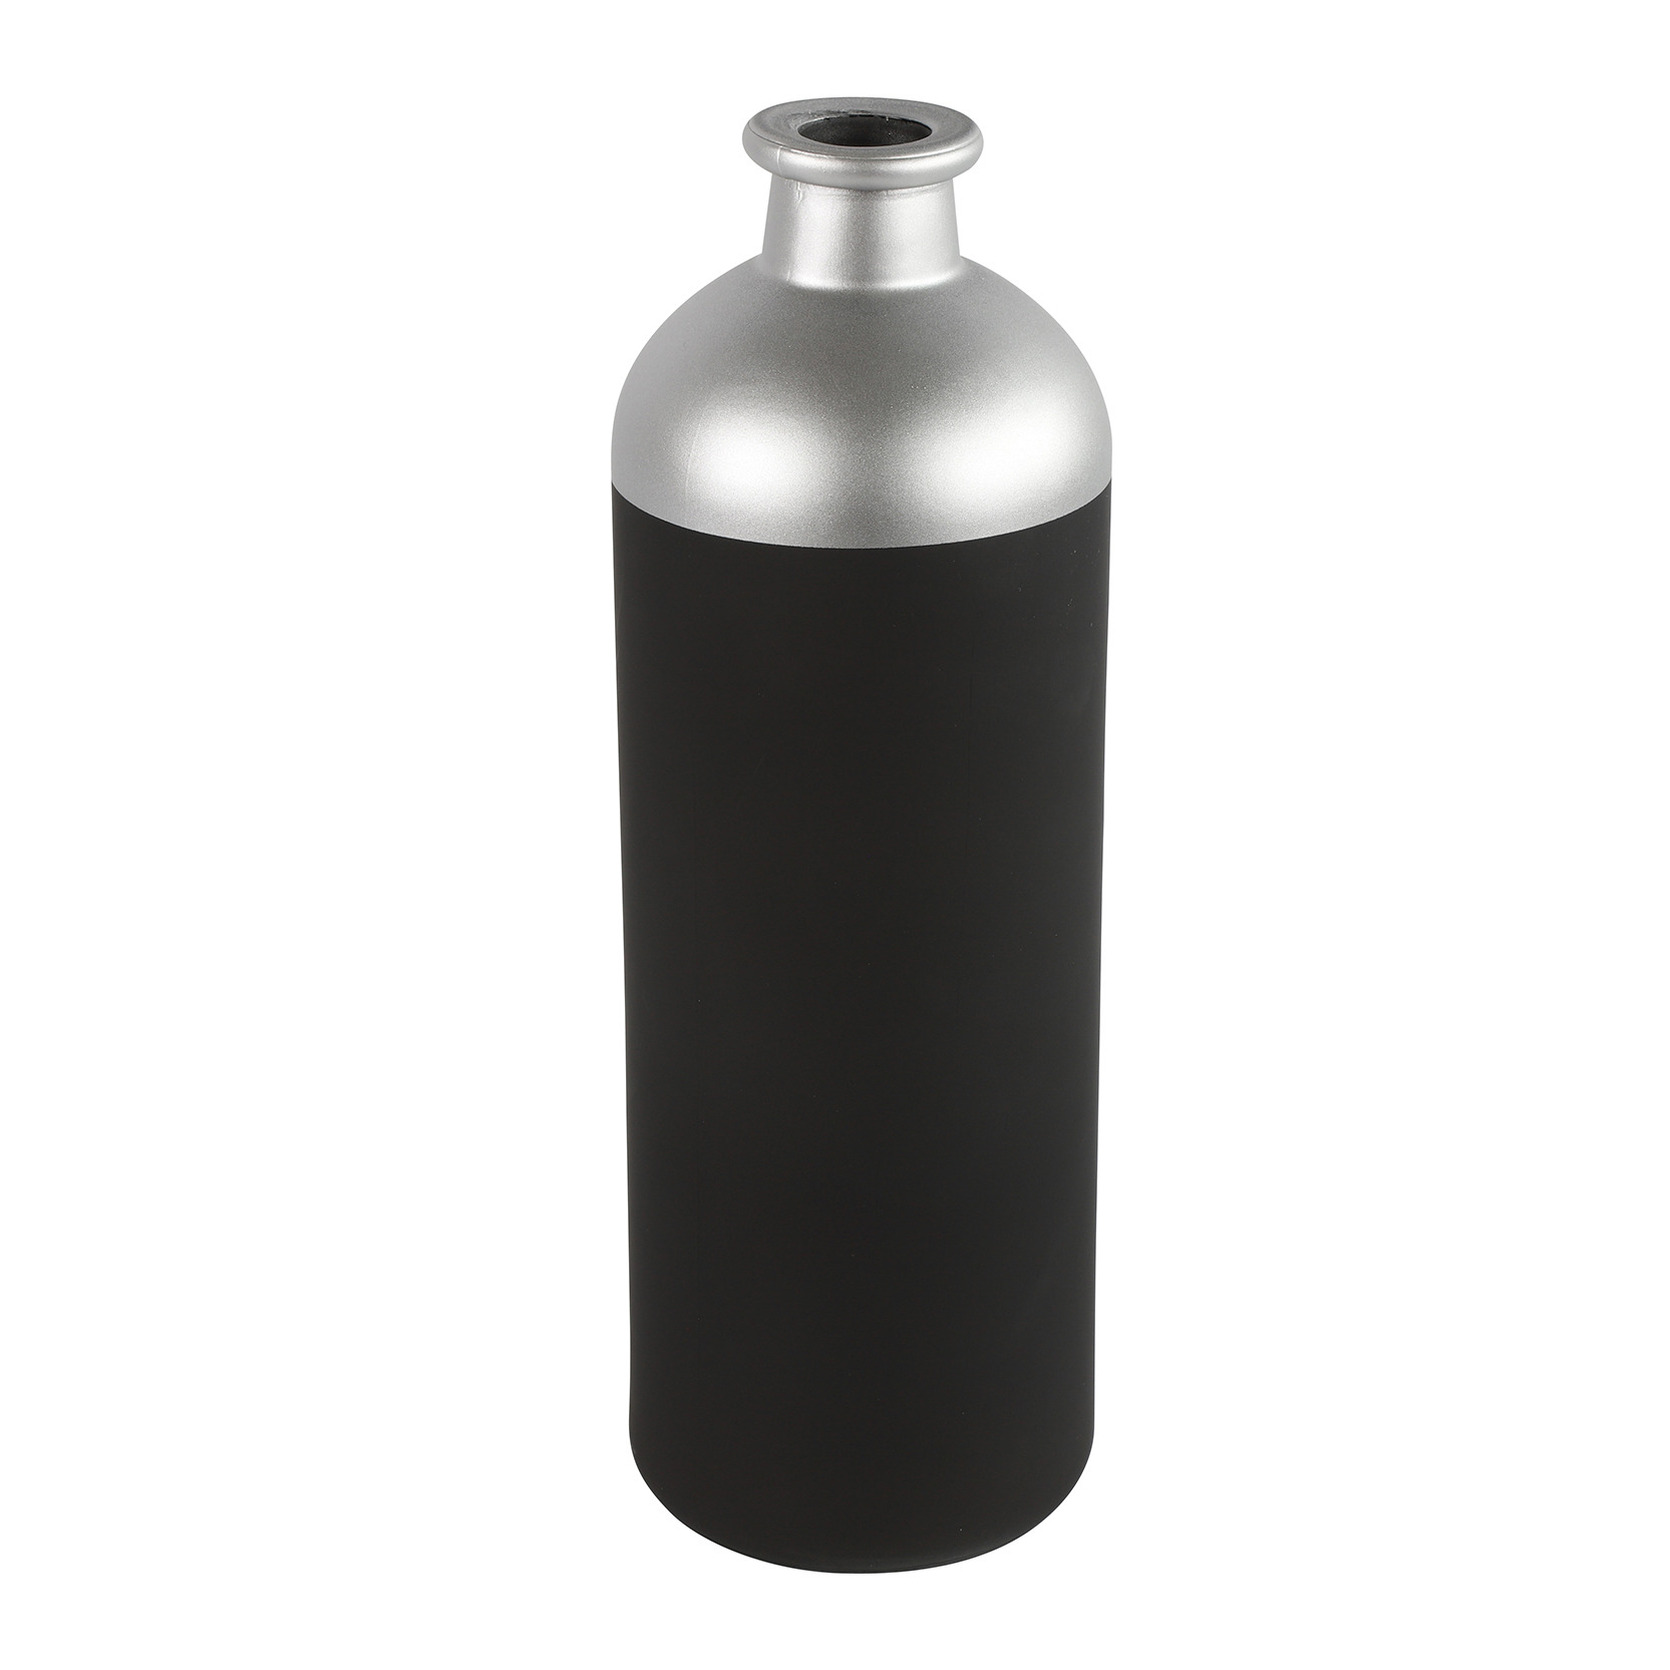 Countryfield Bloemen of deco vaas zwart-zilver glas luxe fles vorm D11 x H33 cm